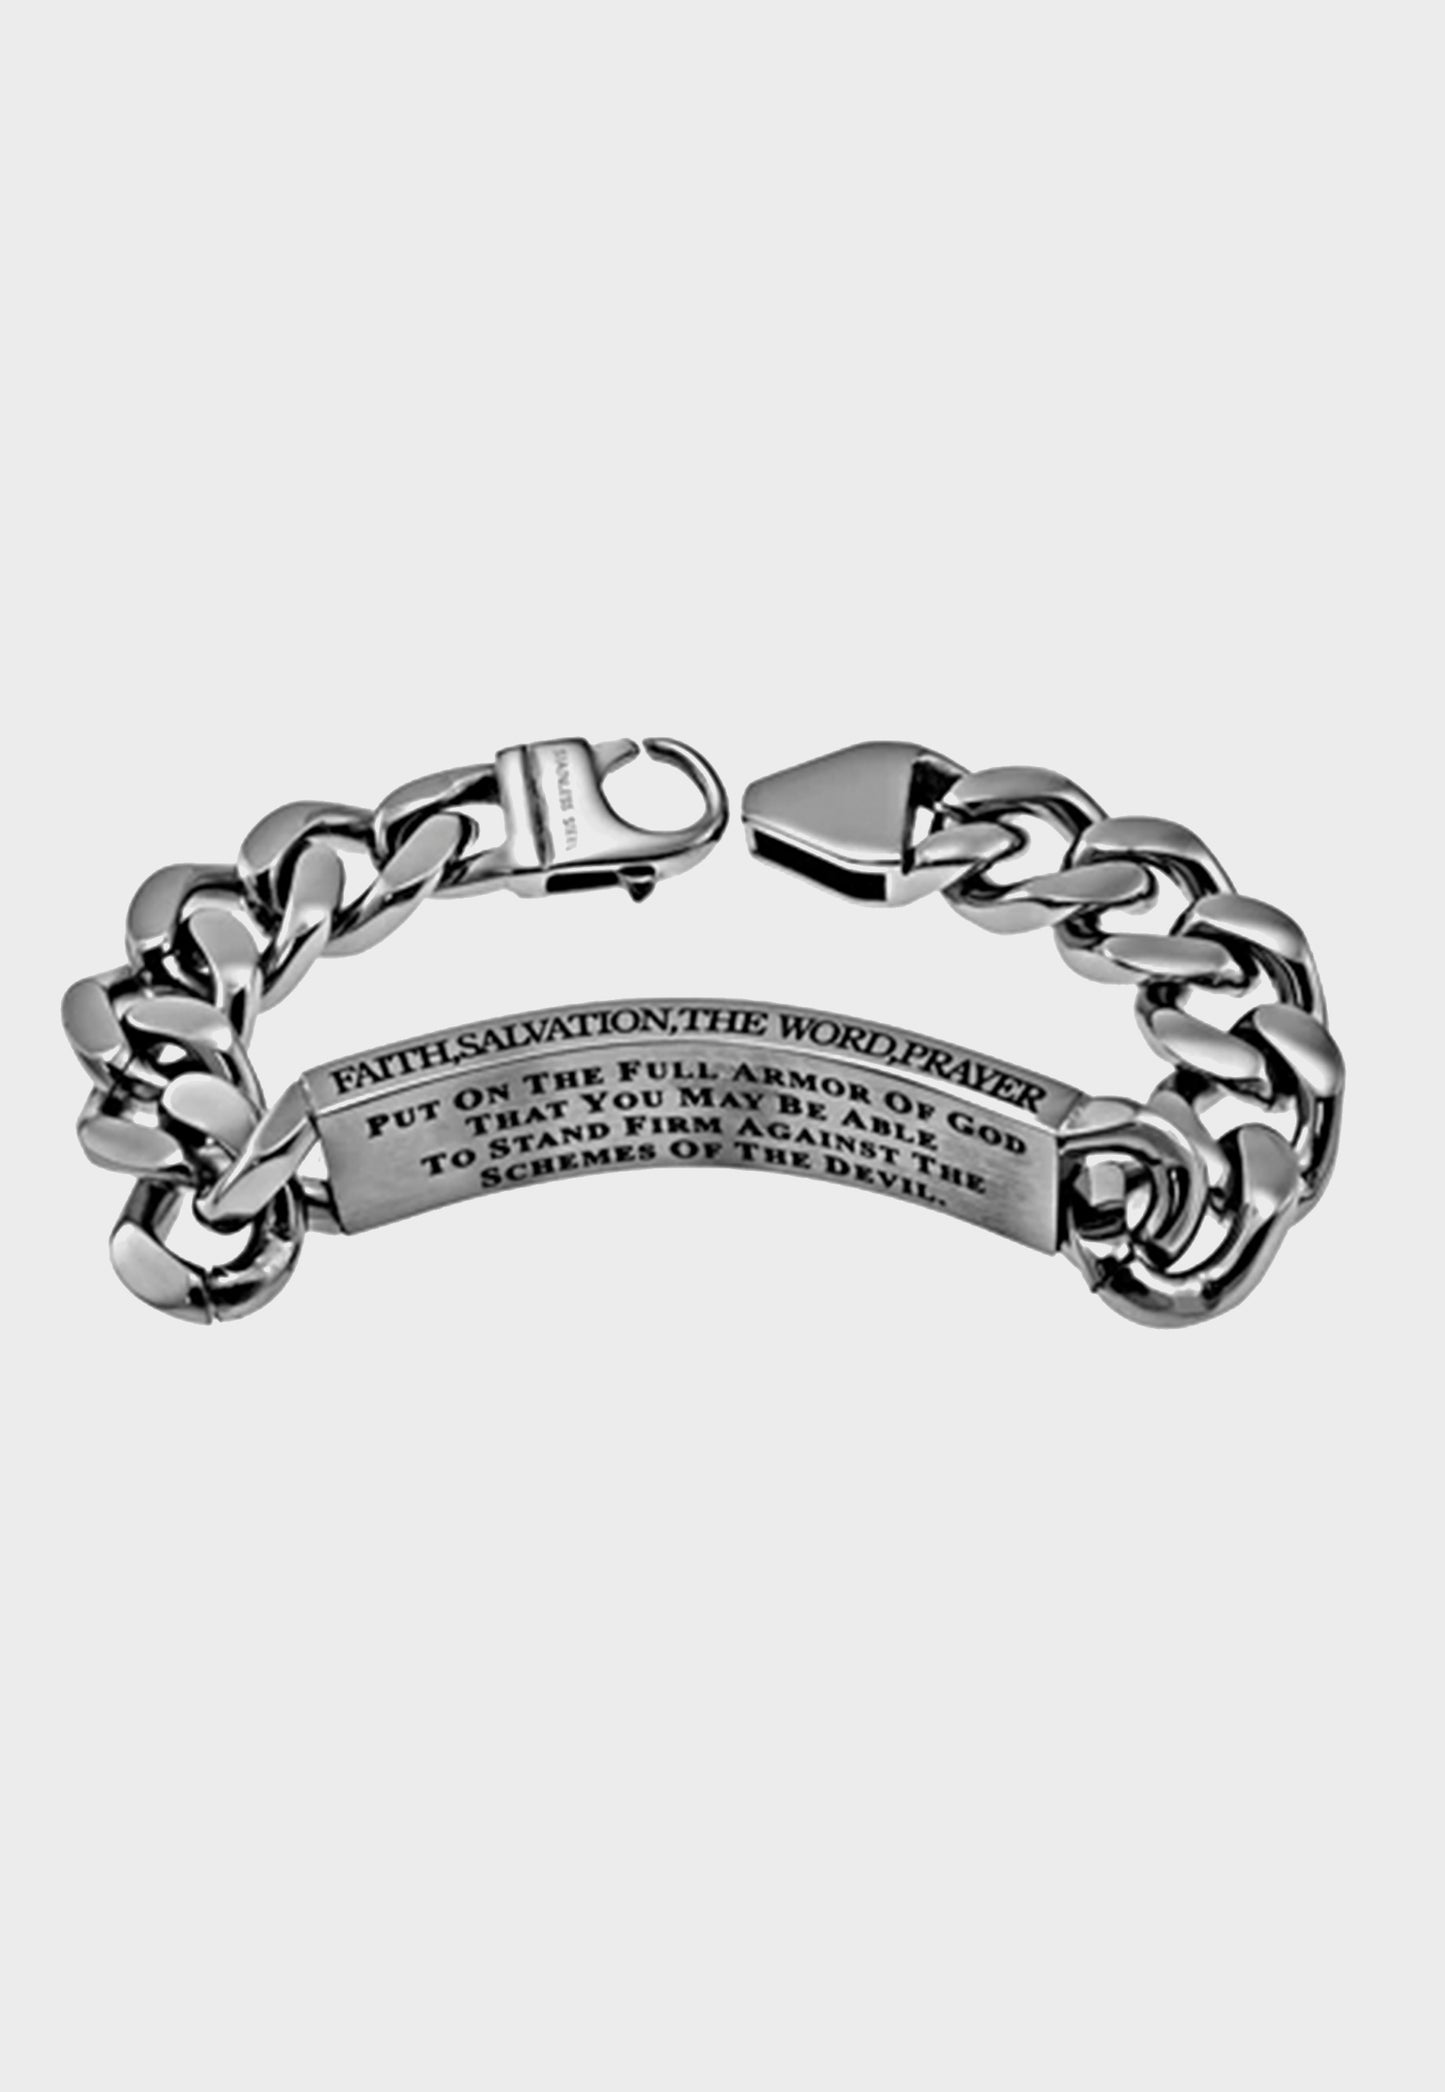 Engraved Christian bracelet for men